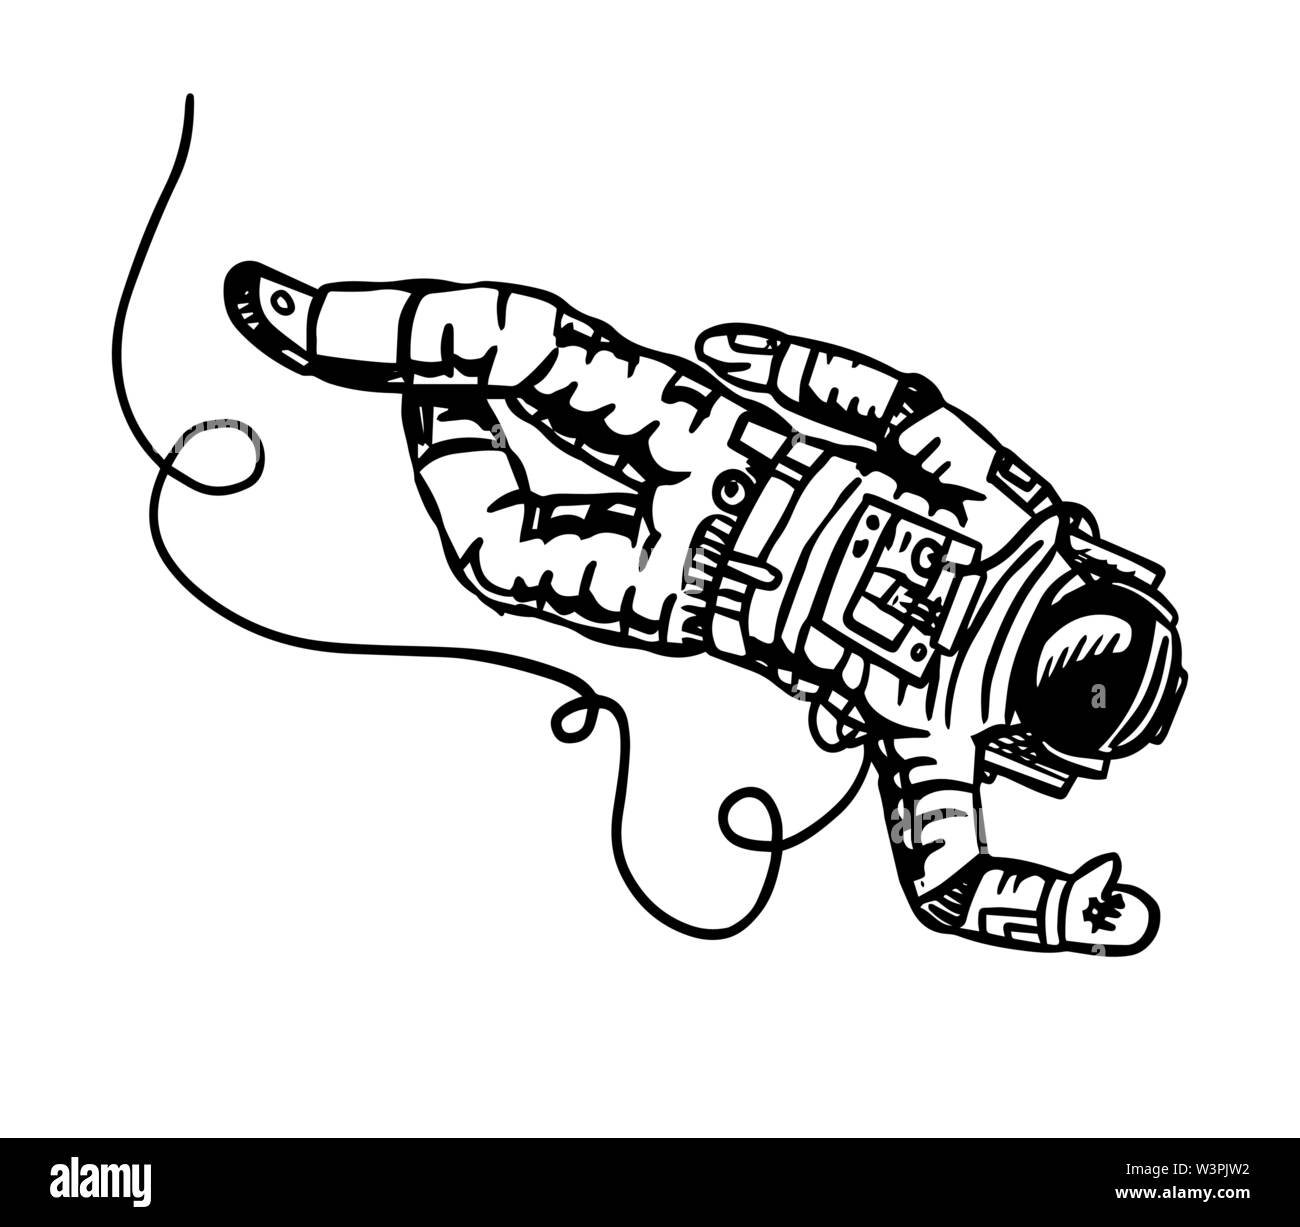 Mouches astronautes dans l'espace. Spaceman explore la galaxie Astronomie esquisse pour emblème ou logo dans le style vintage. Illustration à la main en rétro doodle Illustration de Vecteur